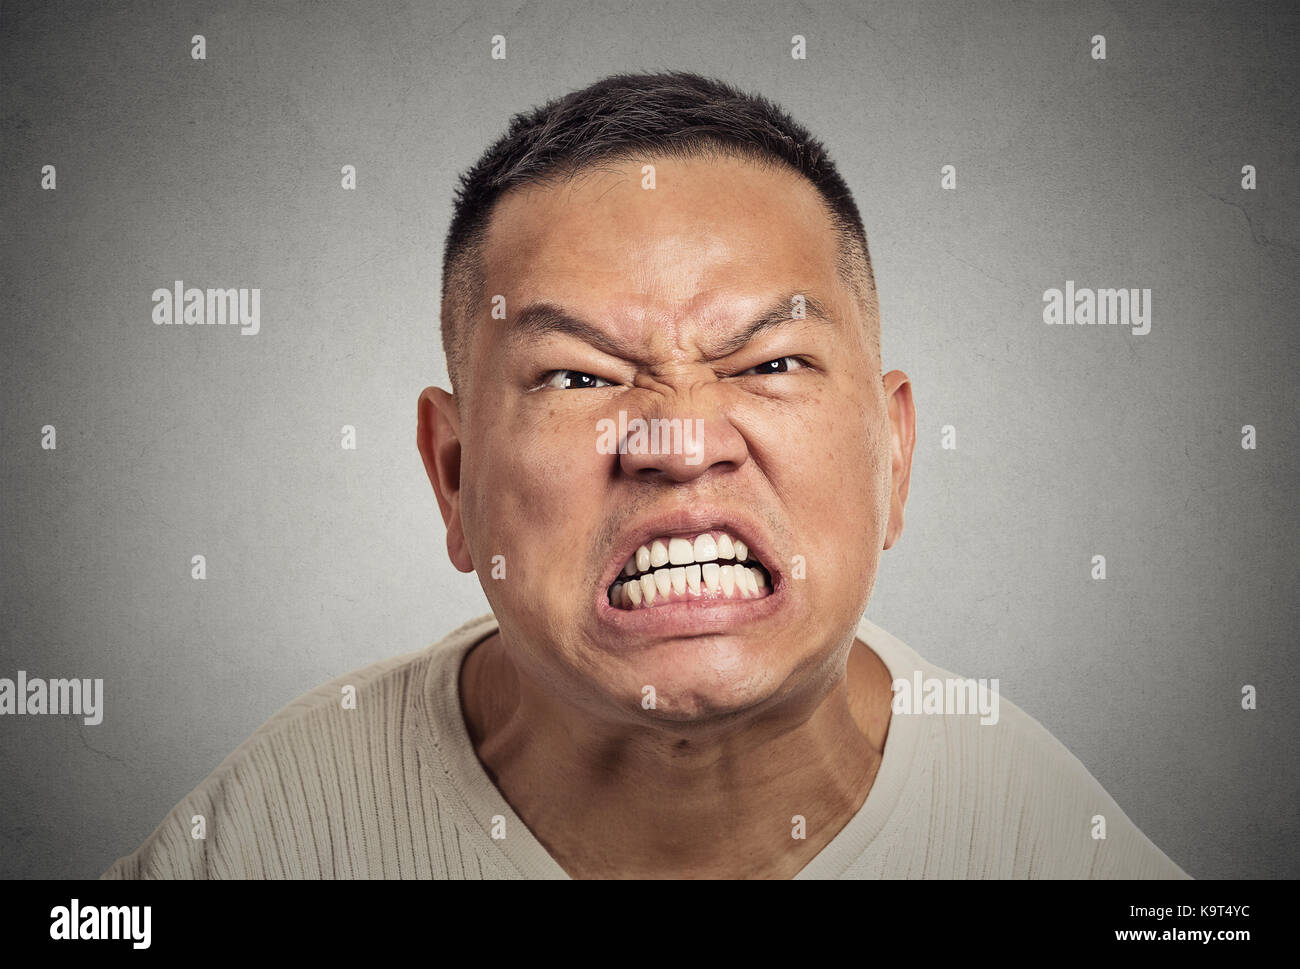 Primo piano ritratto headshot arrabbiato uomo di mezza età con bocca aperta aggressivo urlando isolato sfondo grigio parete. Esposizione facciale negativa dell'emozione umana Foto Stock